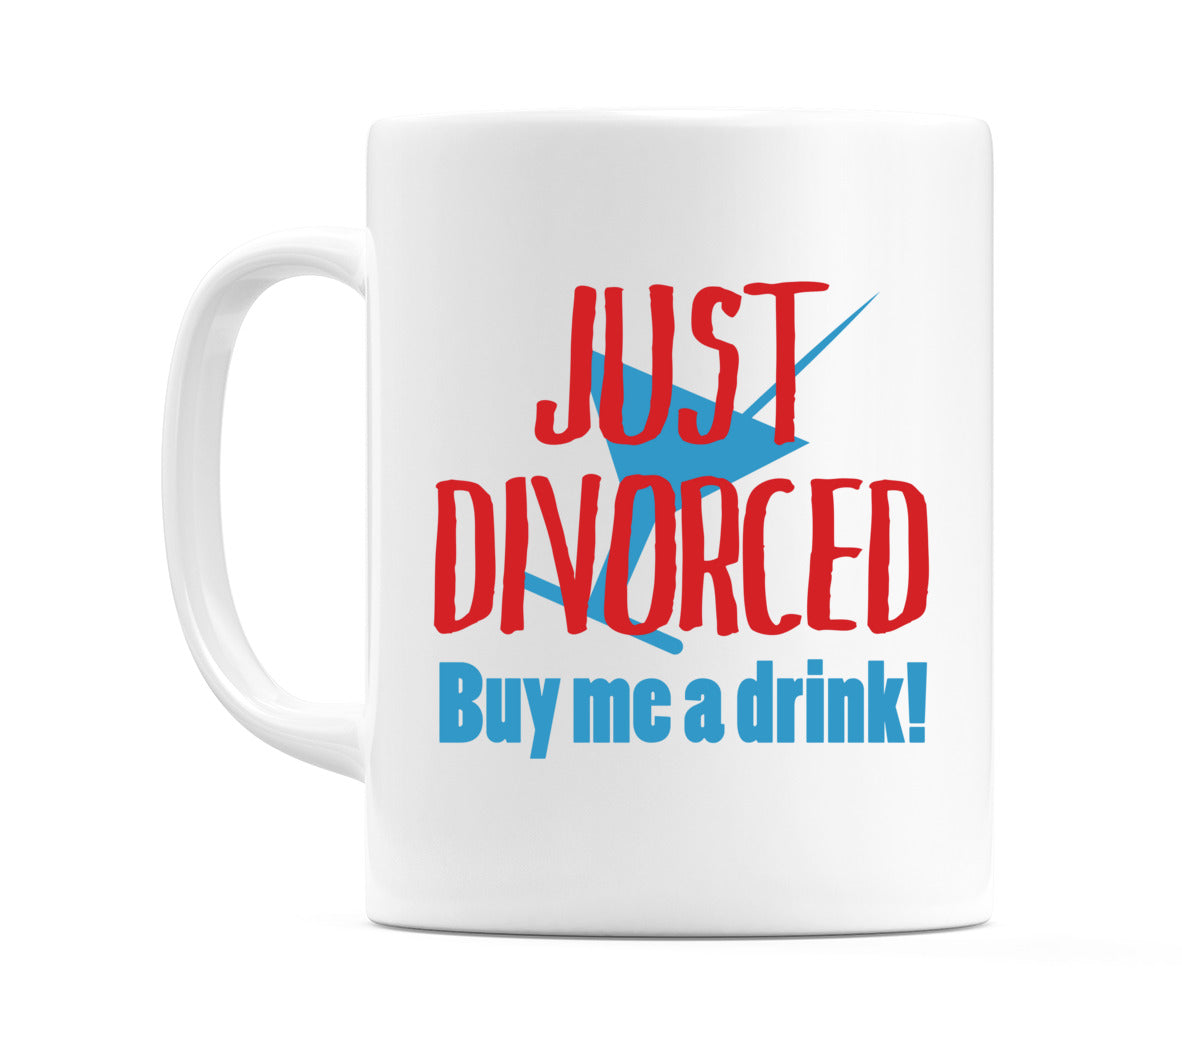 Just Divorced Buy Me a Drink! Mug